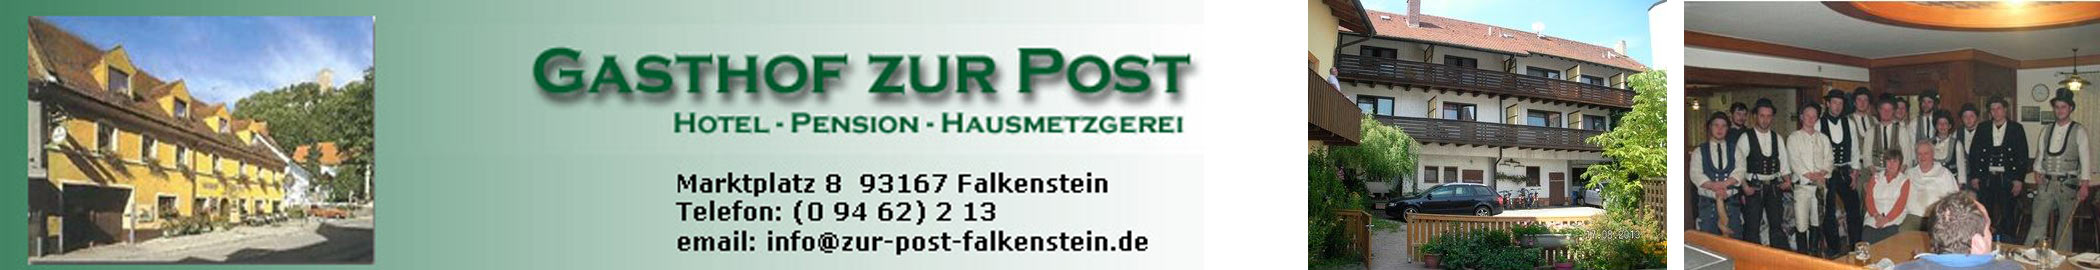 Gasthof zur Post Falkenstein